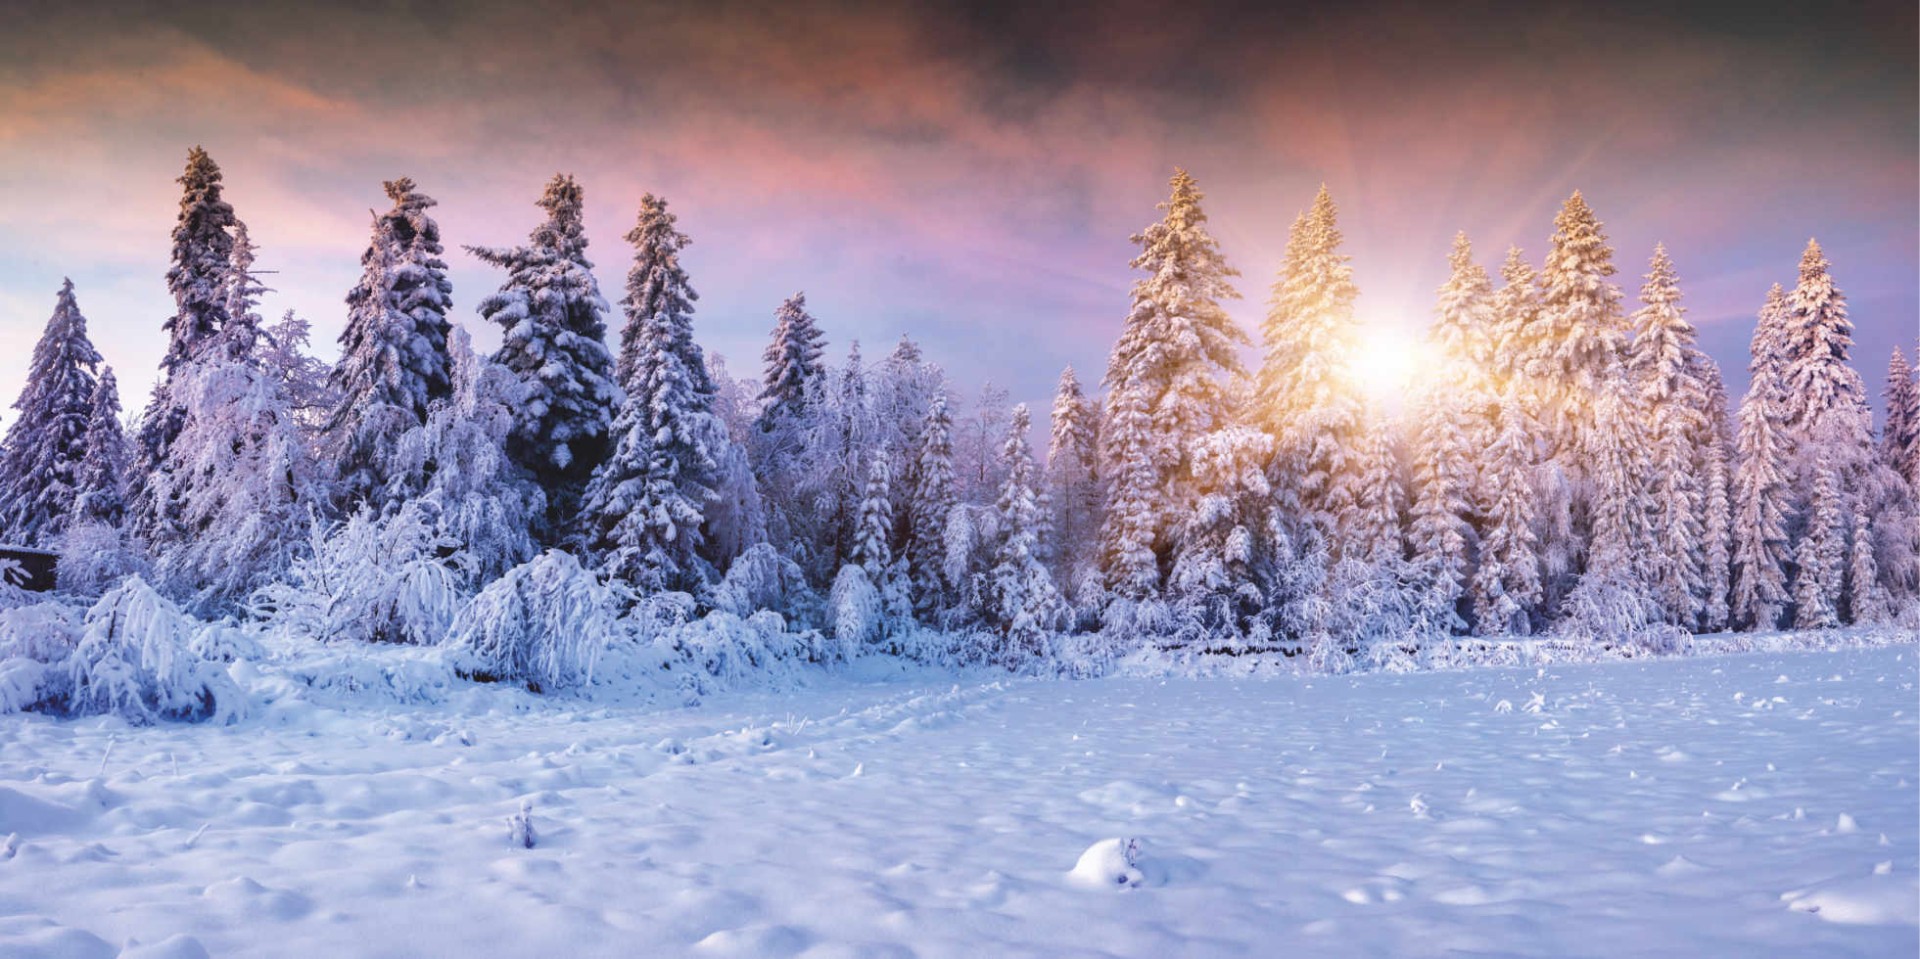 Большой прямоугольный баннер с изображением зимнего солнечного леса - 0